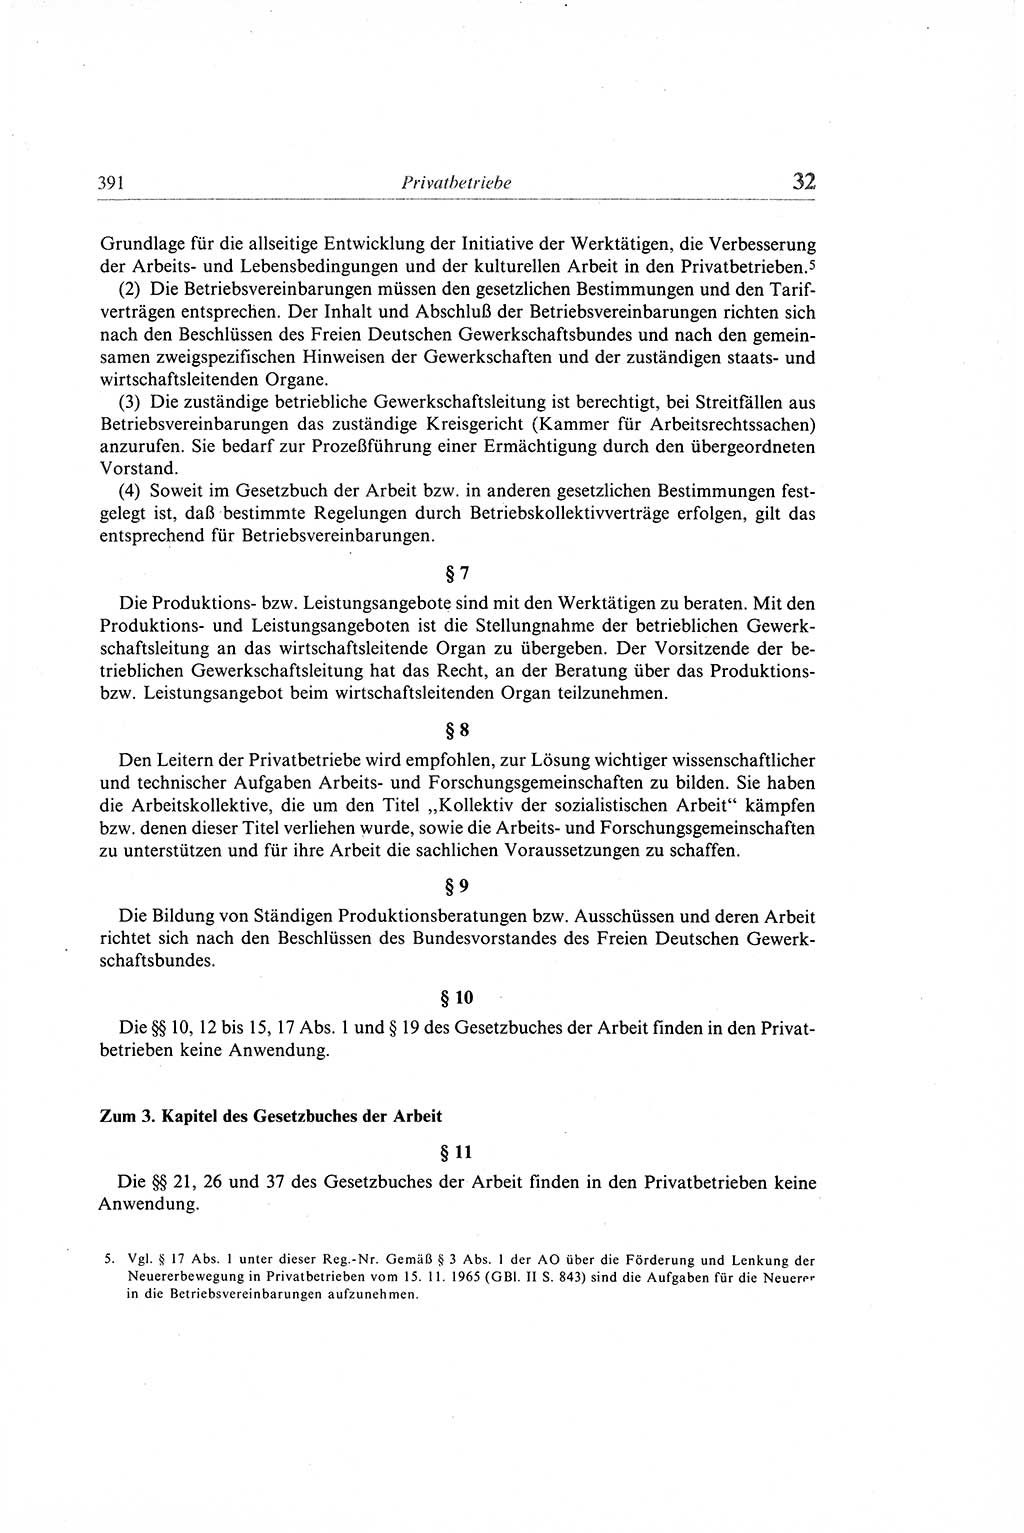 Gesetzbuch der Arbeit (GBA) und andere ausgewählte rechtliche Bestimmungen [Deutsche Demokratische Republik (DDR)] 1968, Seite 391 (GBA DDR 1968, S. 391)